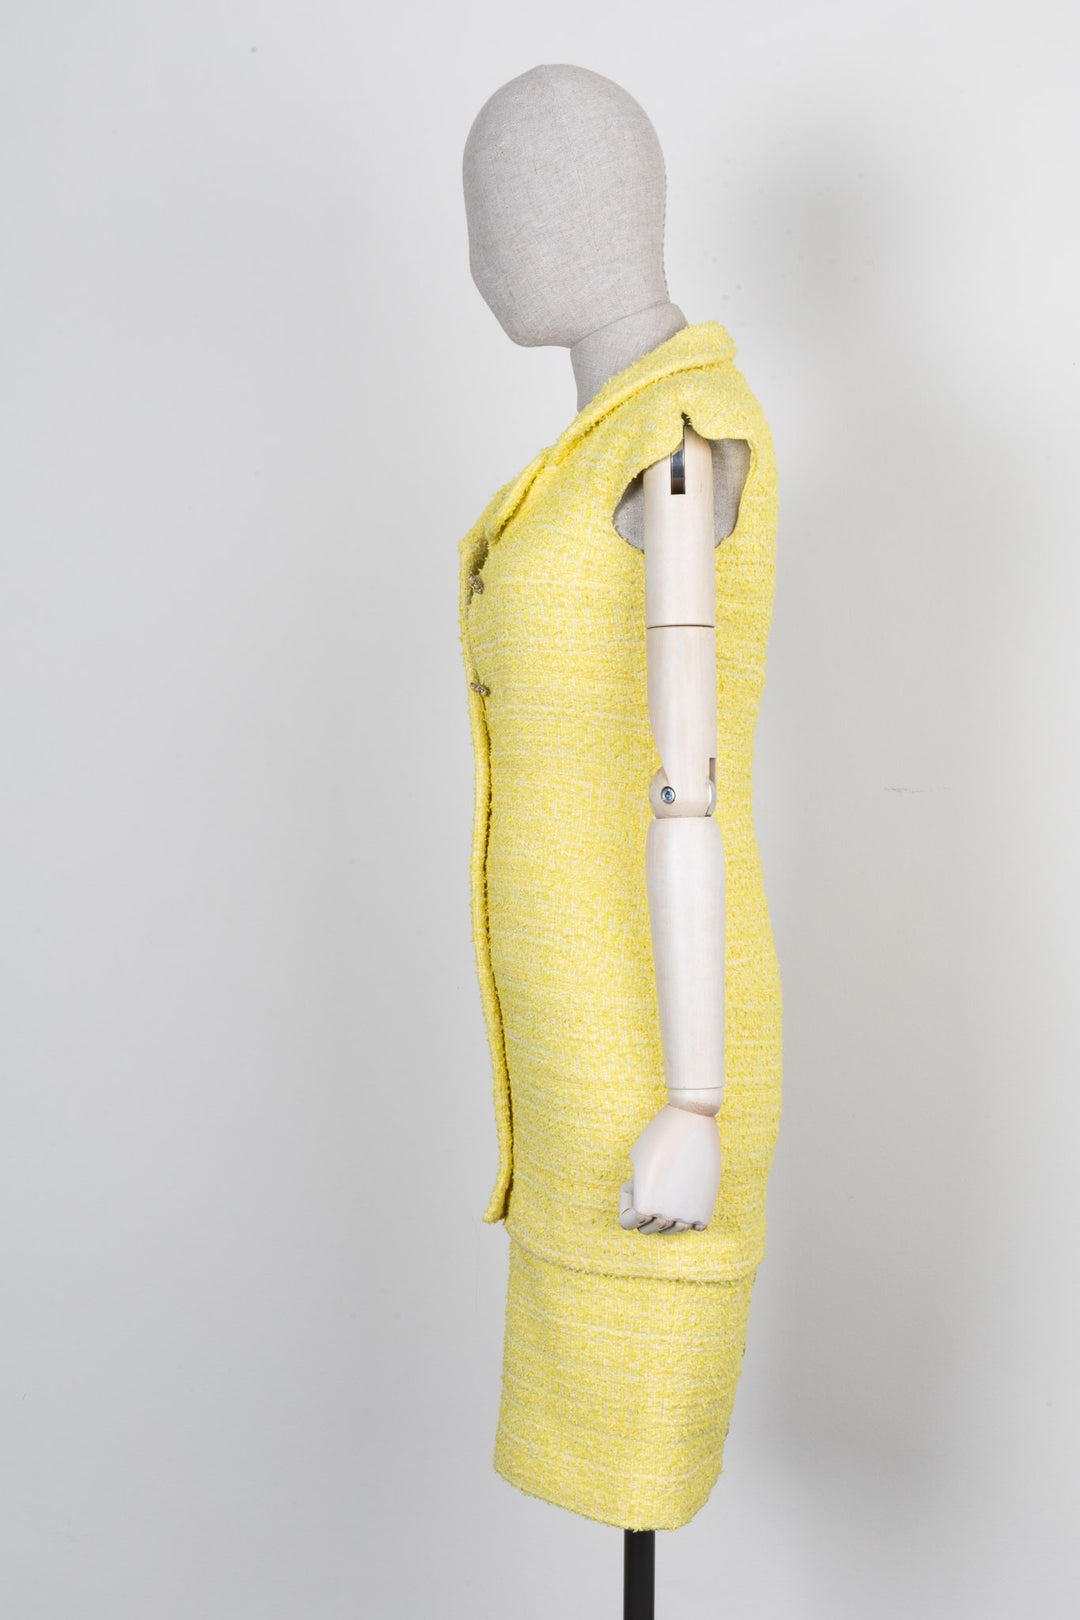 CHANEL Dress Tweed Yellow 12C